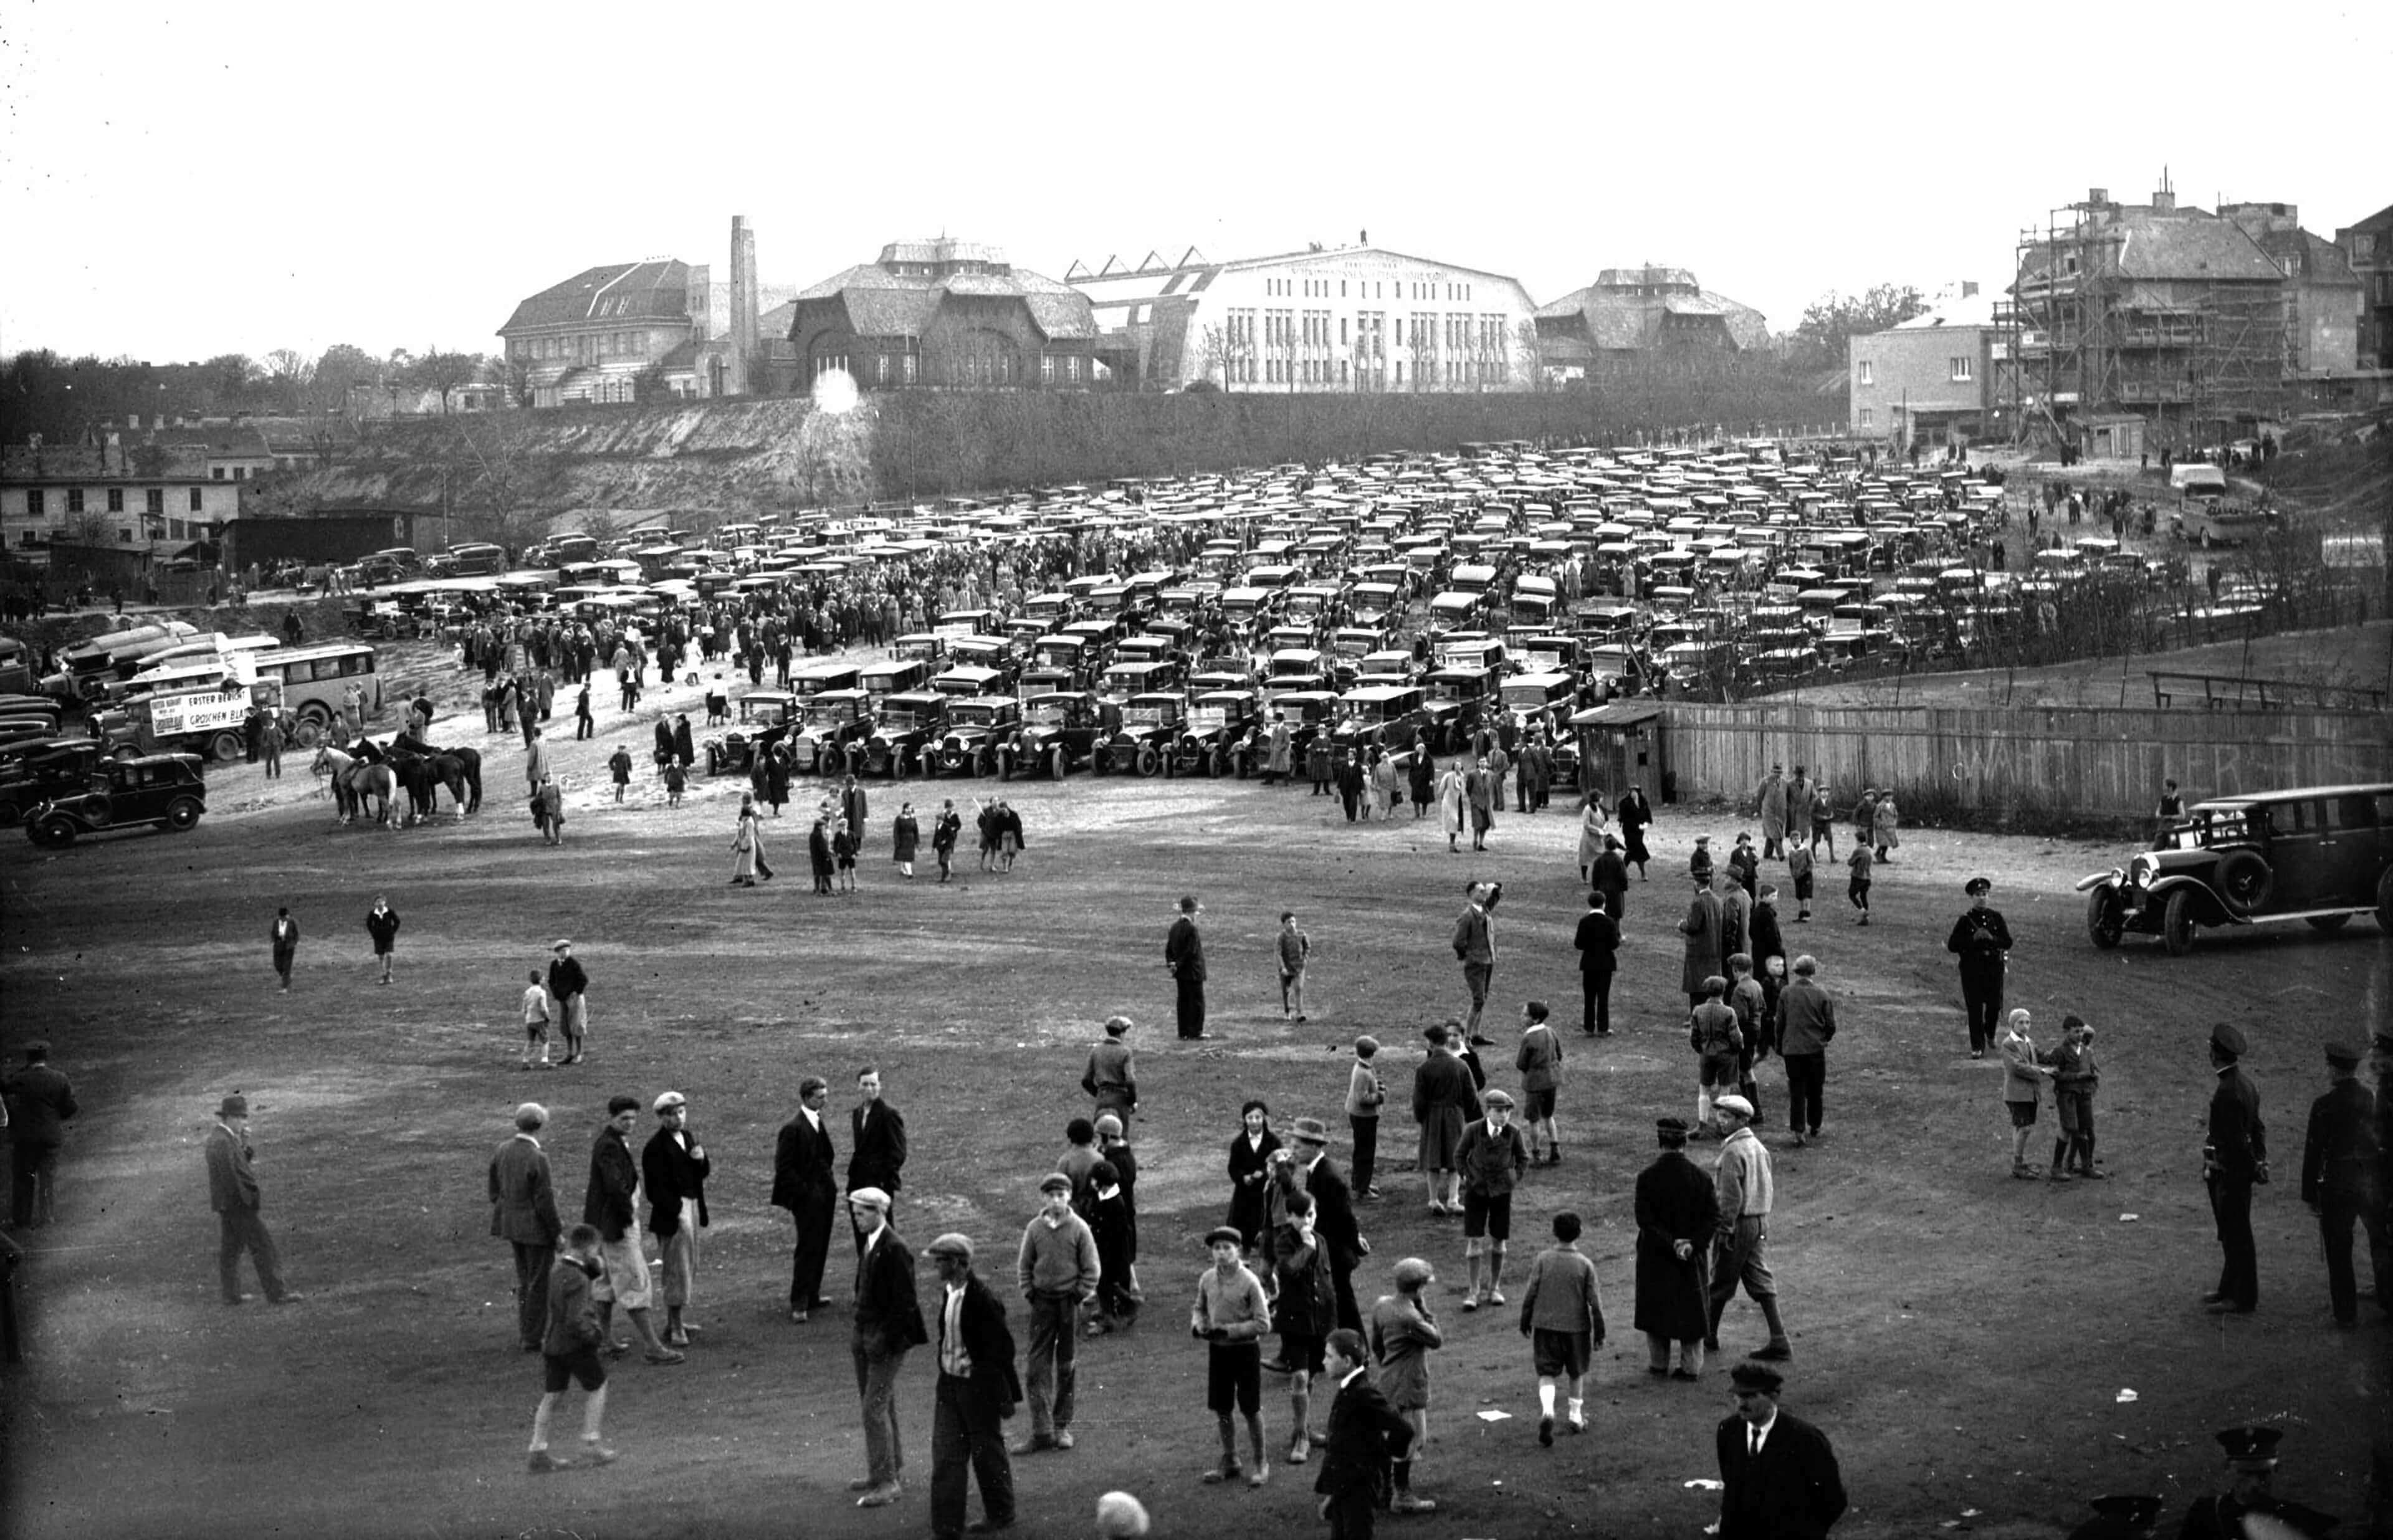 Zuschauerparkplatz beim Stadion auf der Hohen Warte, um 1925, Foto: Votava / Imagno / picturedesk.com 